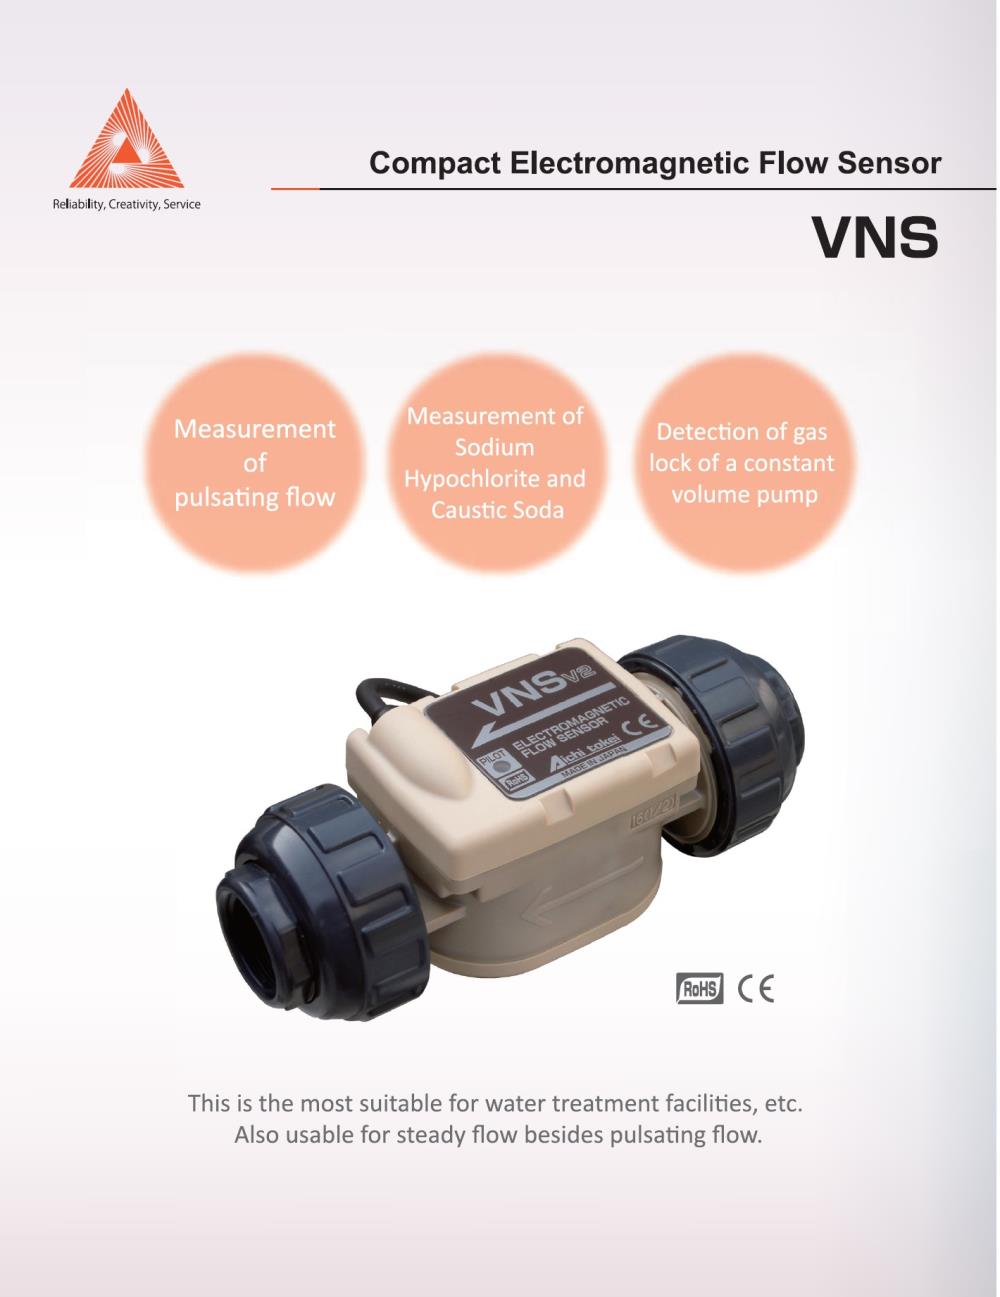 เซ็นเซอร์วัดการไหลสำหรับสารเคมี ระบบแม่เหล็กไฟฟ้า(Electromagnetic flow sensor) ขนาดเล็ก รุ่น VNS